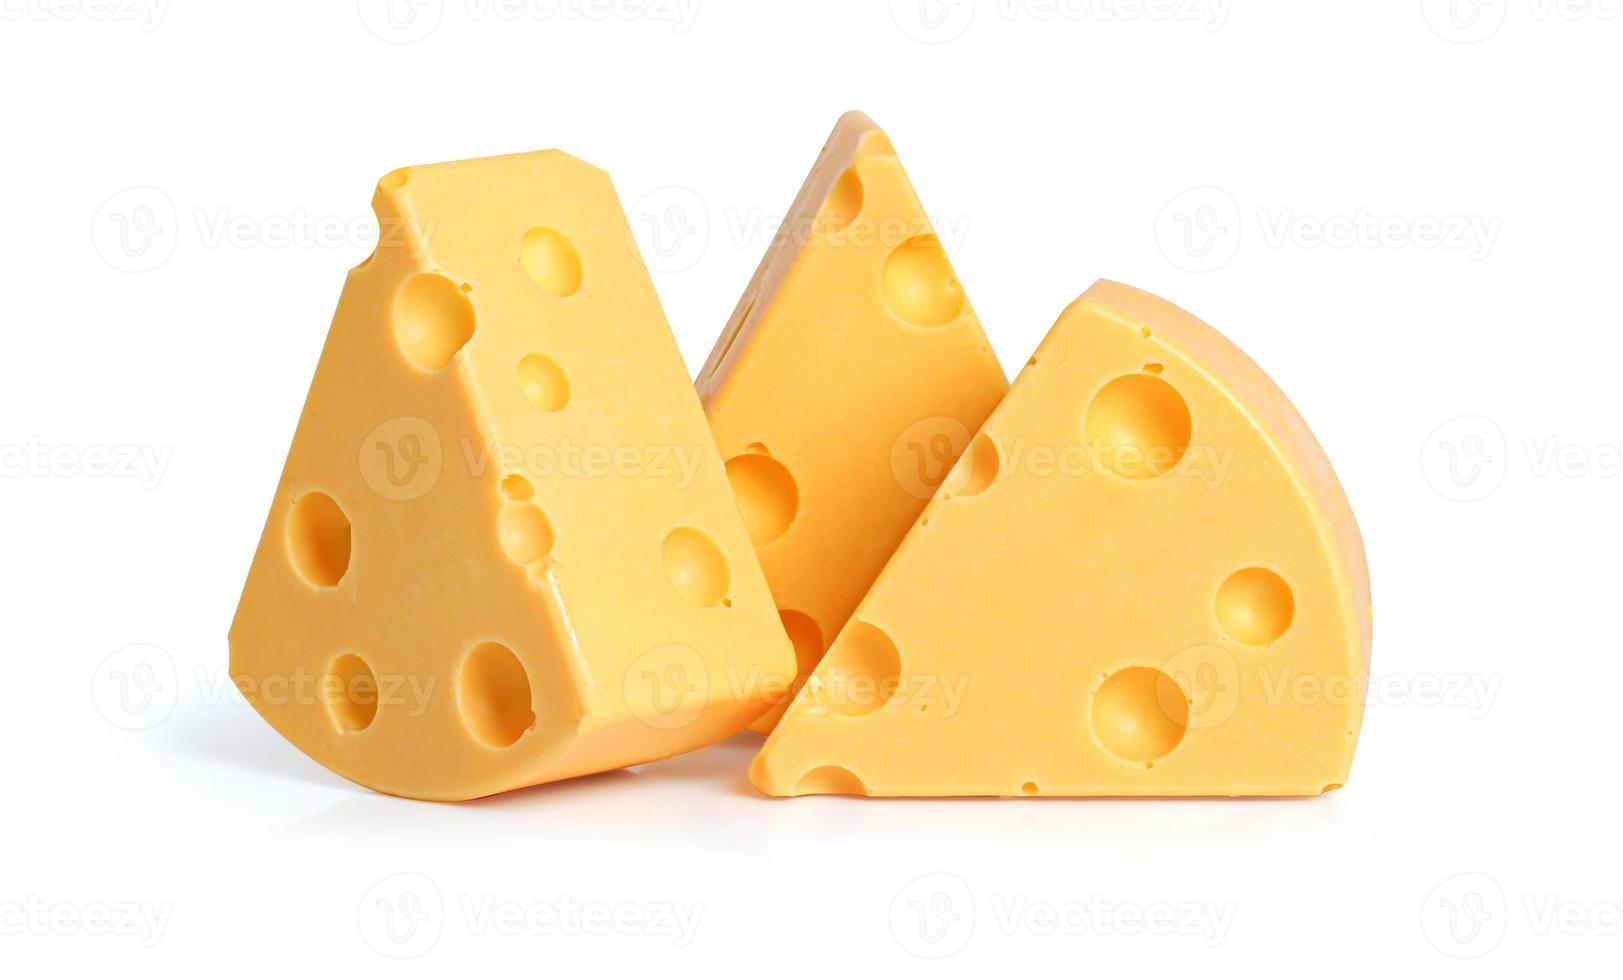 drei Keile gelben Käses mit Löchern auf weißem Hintergrund foto